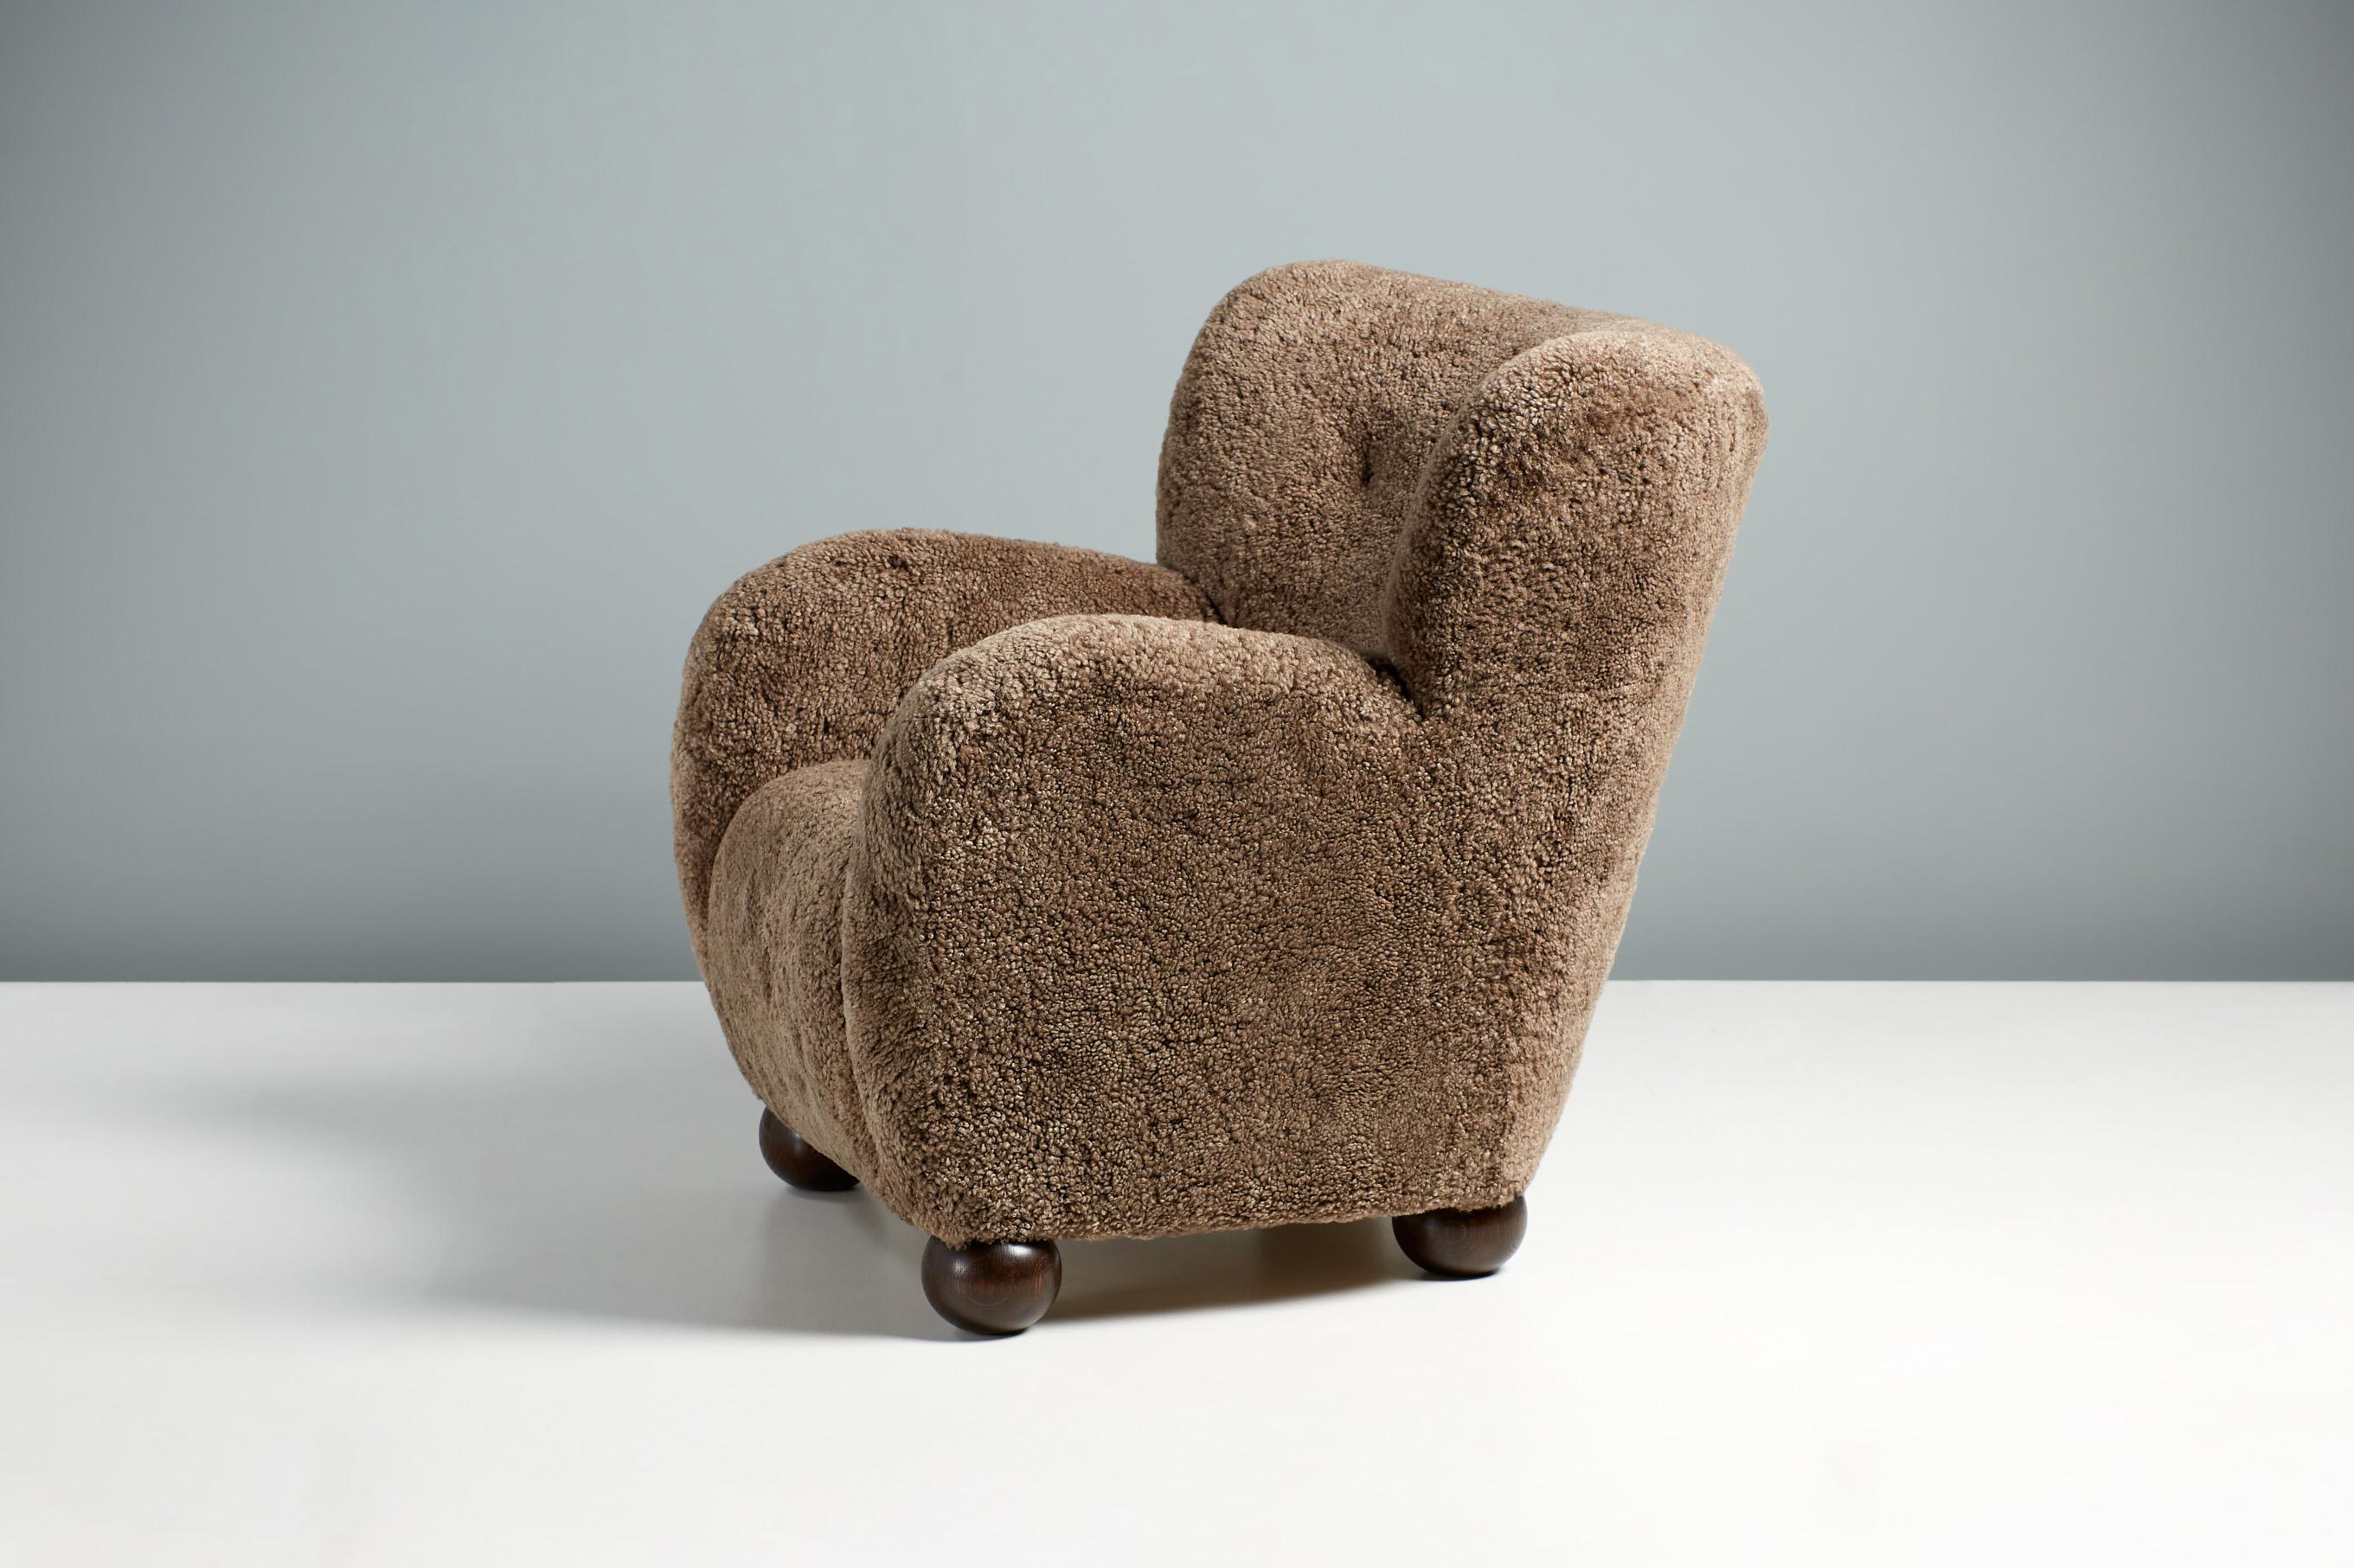 Dagmar Design - Karu Sessel.

Der Sessel Karu wird auf Bestellung in unseren Werkstätten in Großbritannien handgefertigt und besteht aus einem massiven Buchenholzrahmen und einem voll gefederten Sitz. Die runden Kugelfüße sind in geölter Eiche,